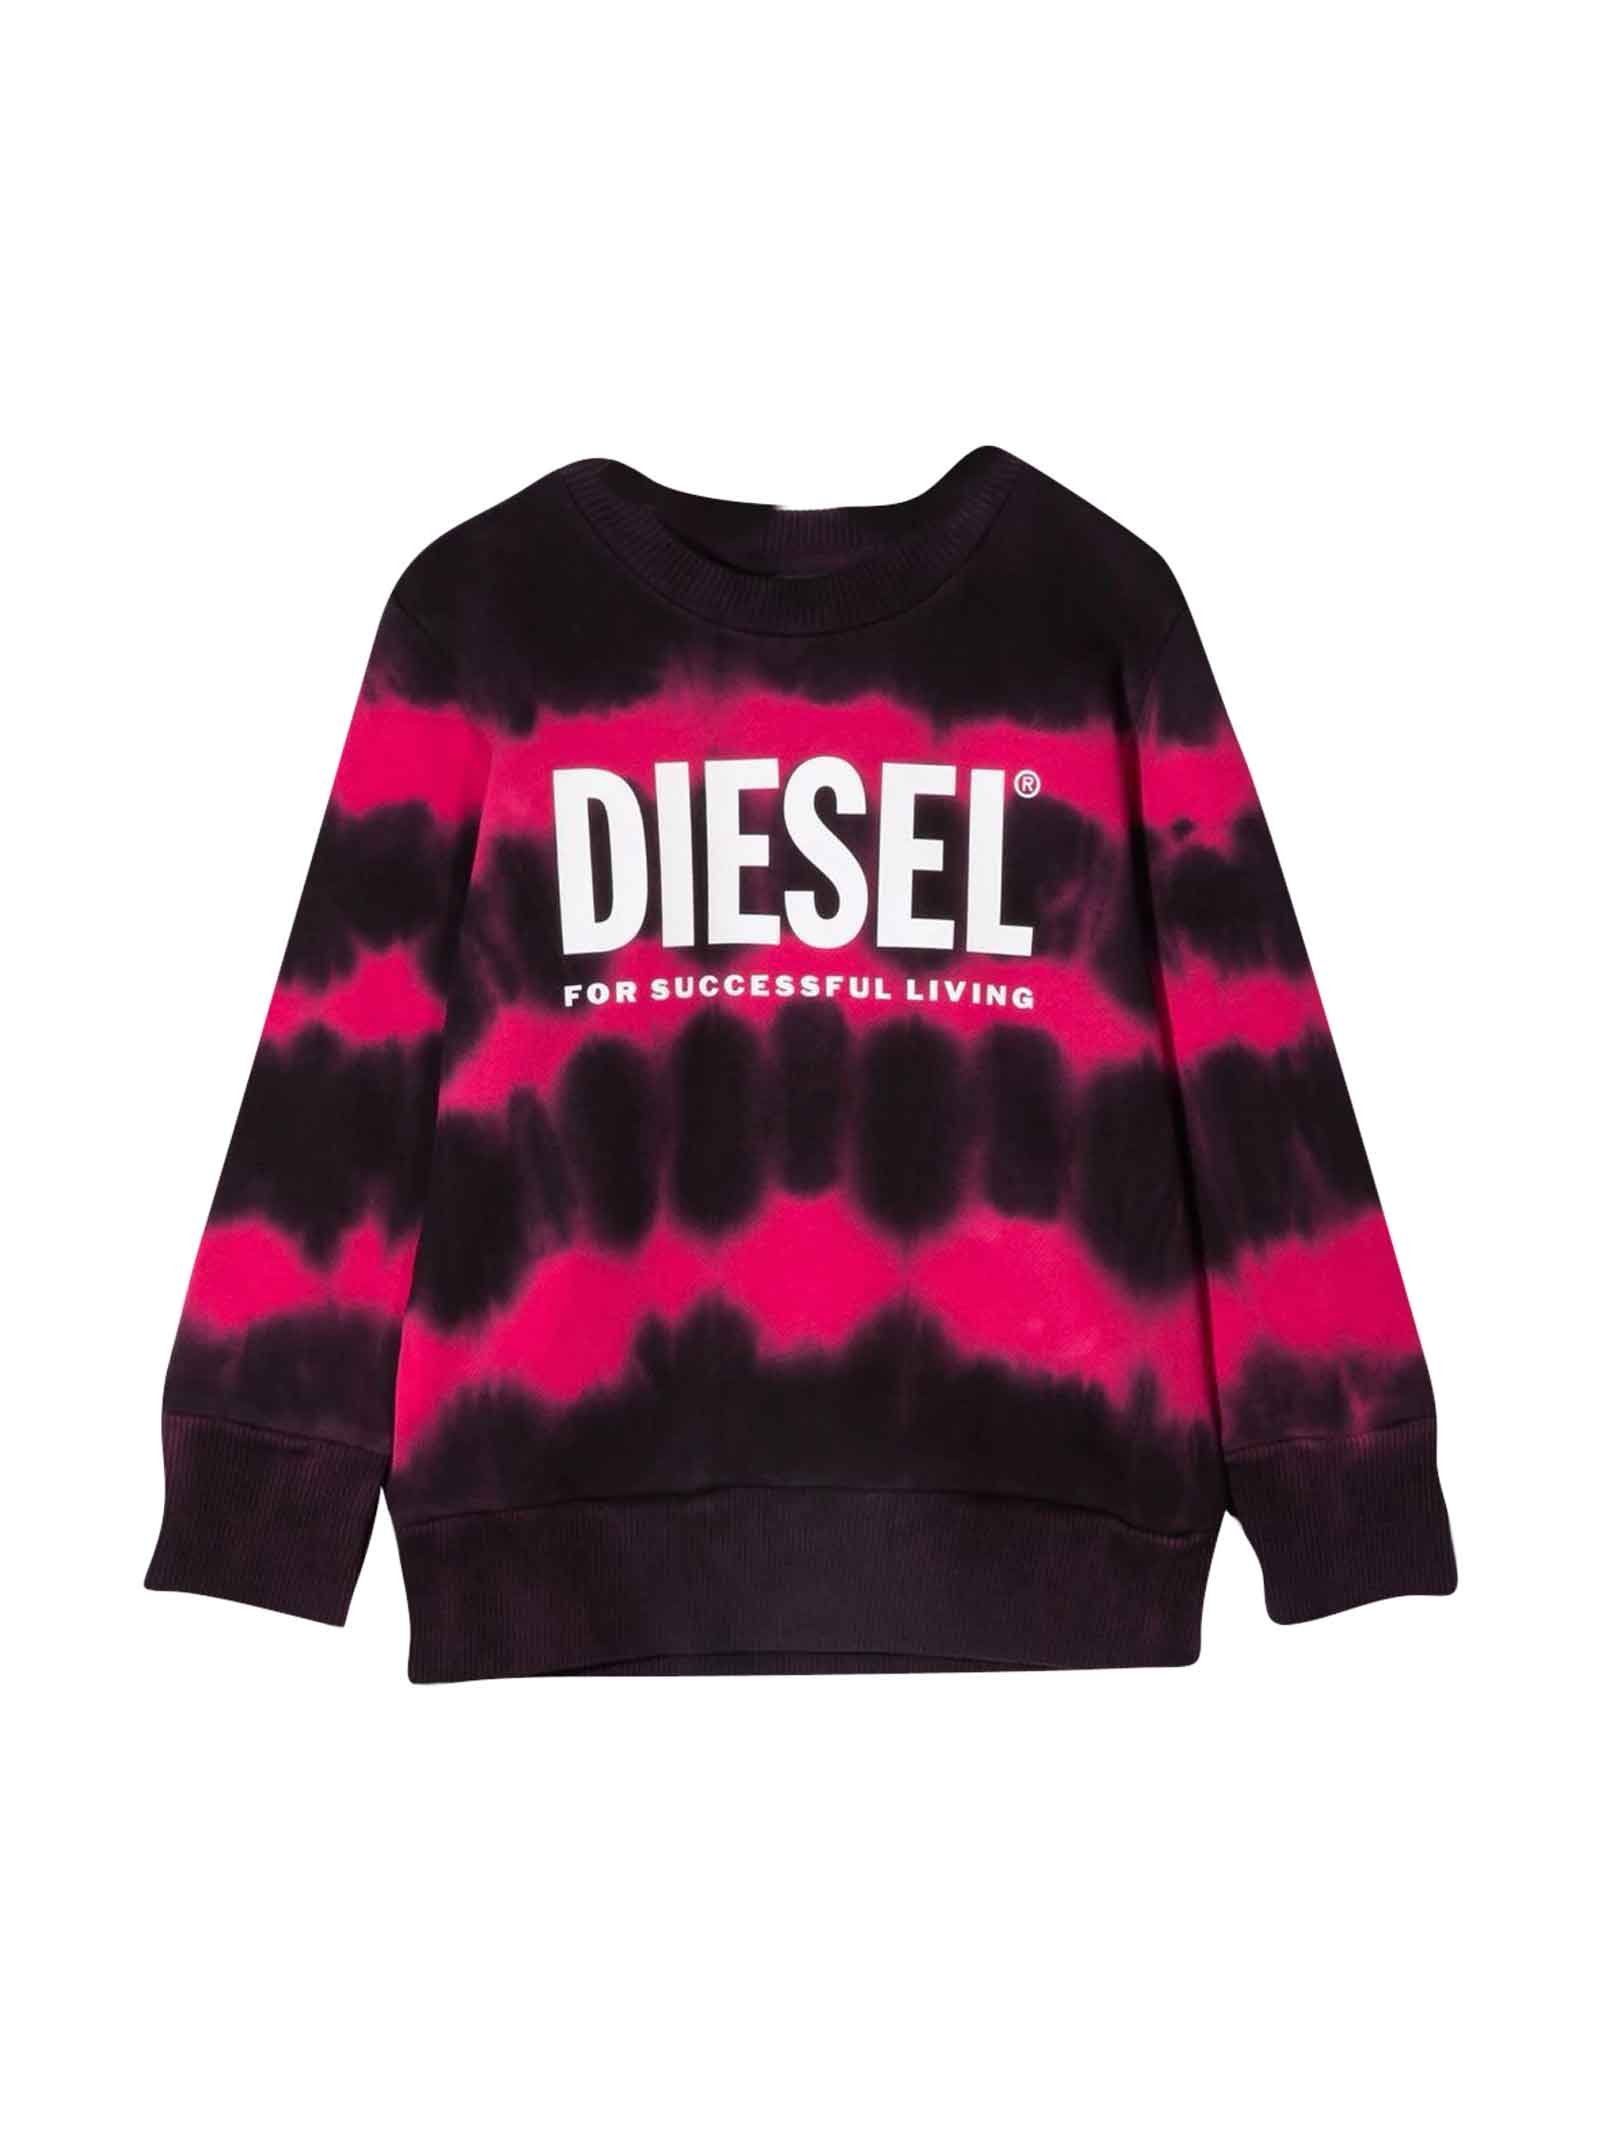 Diesel Black Sweatshirt Baby